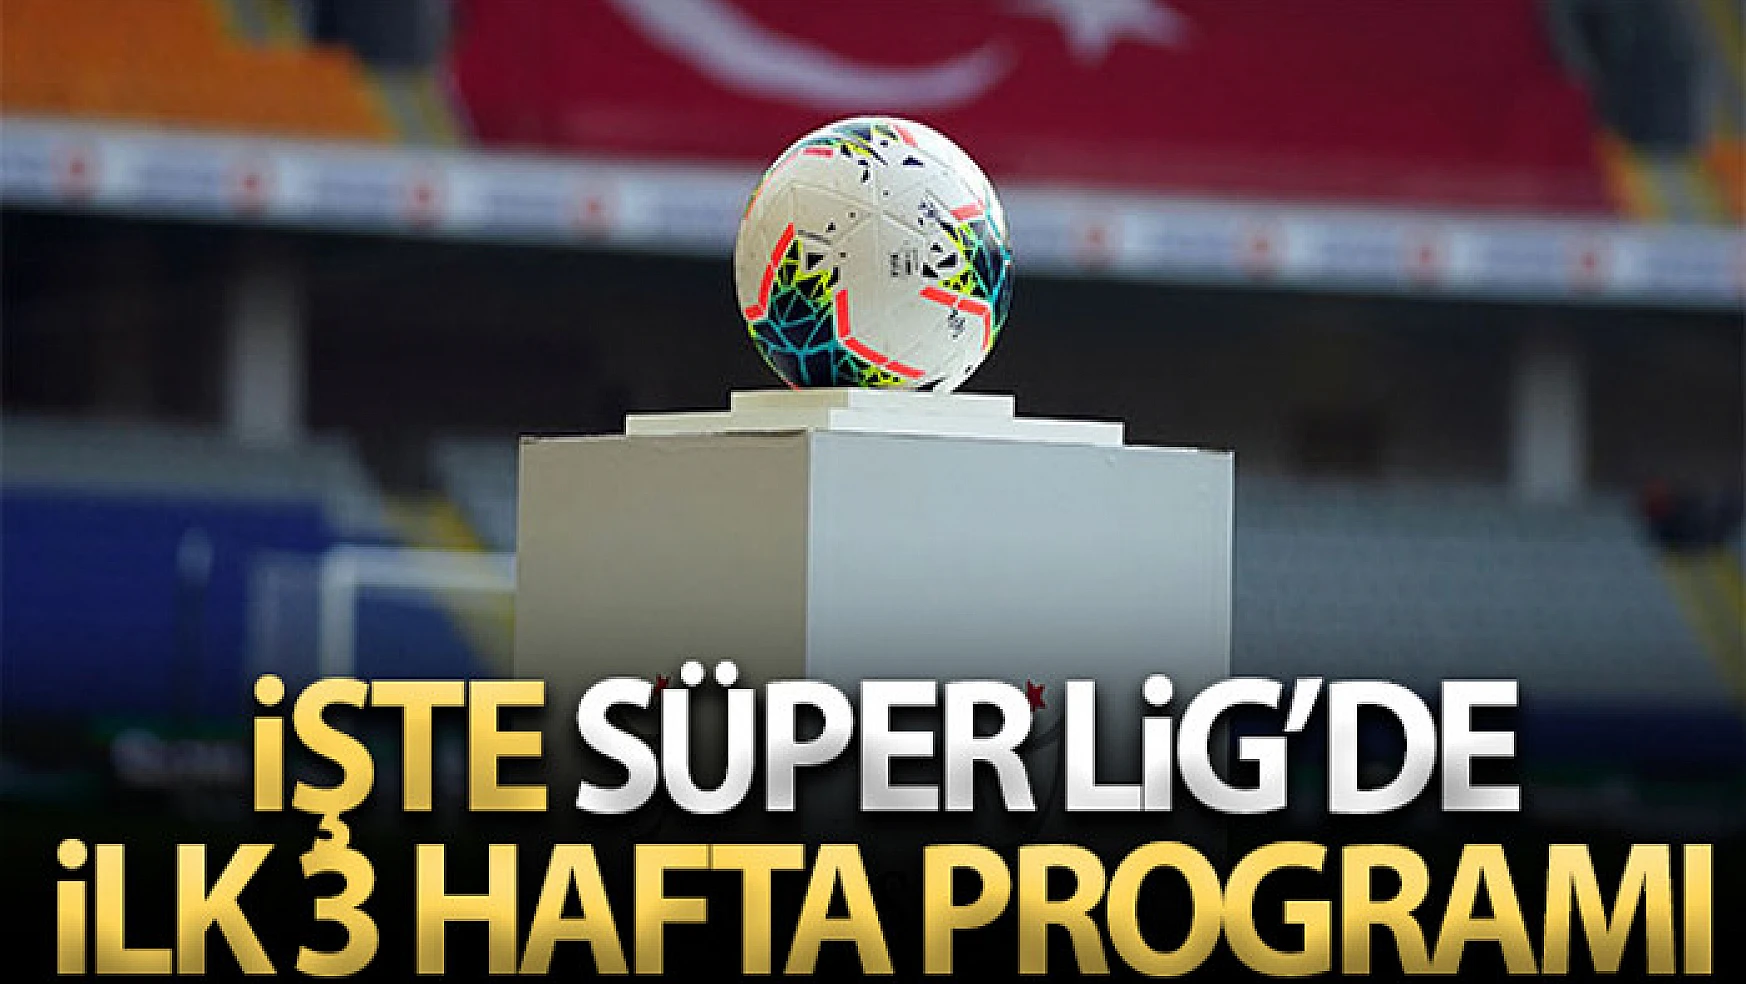 Süper Lig'de ilk 3 haftanın programı açıklandı